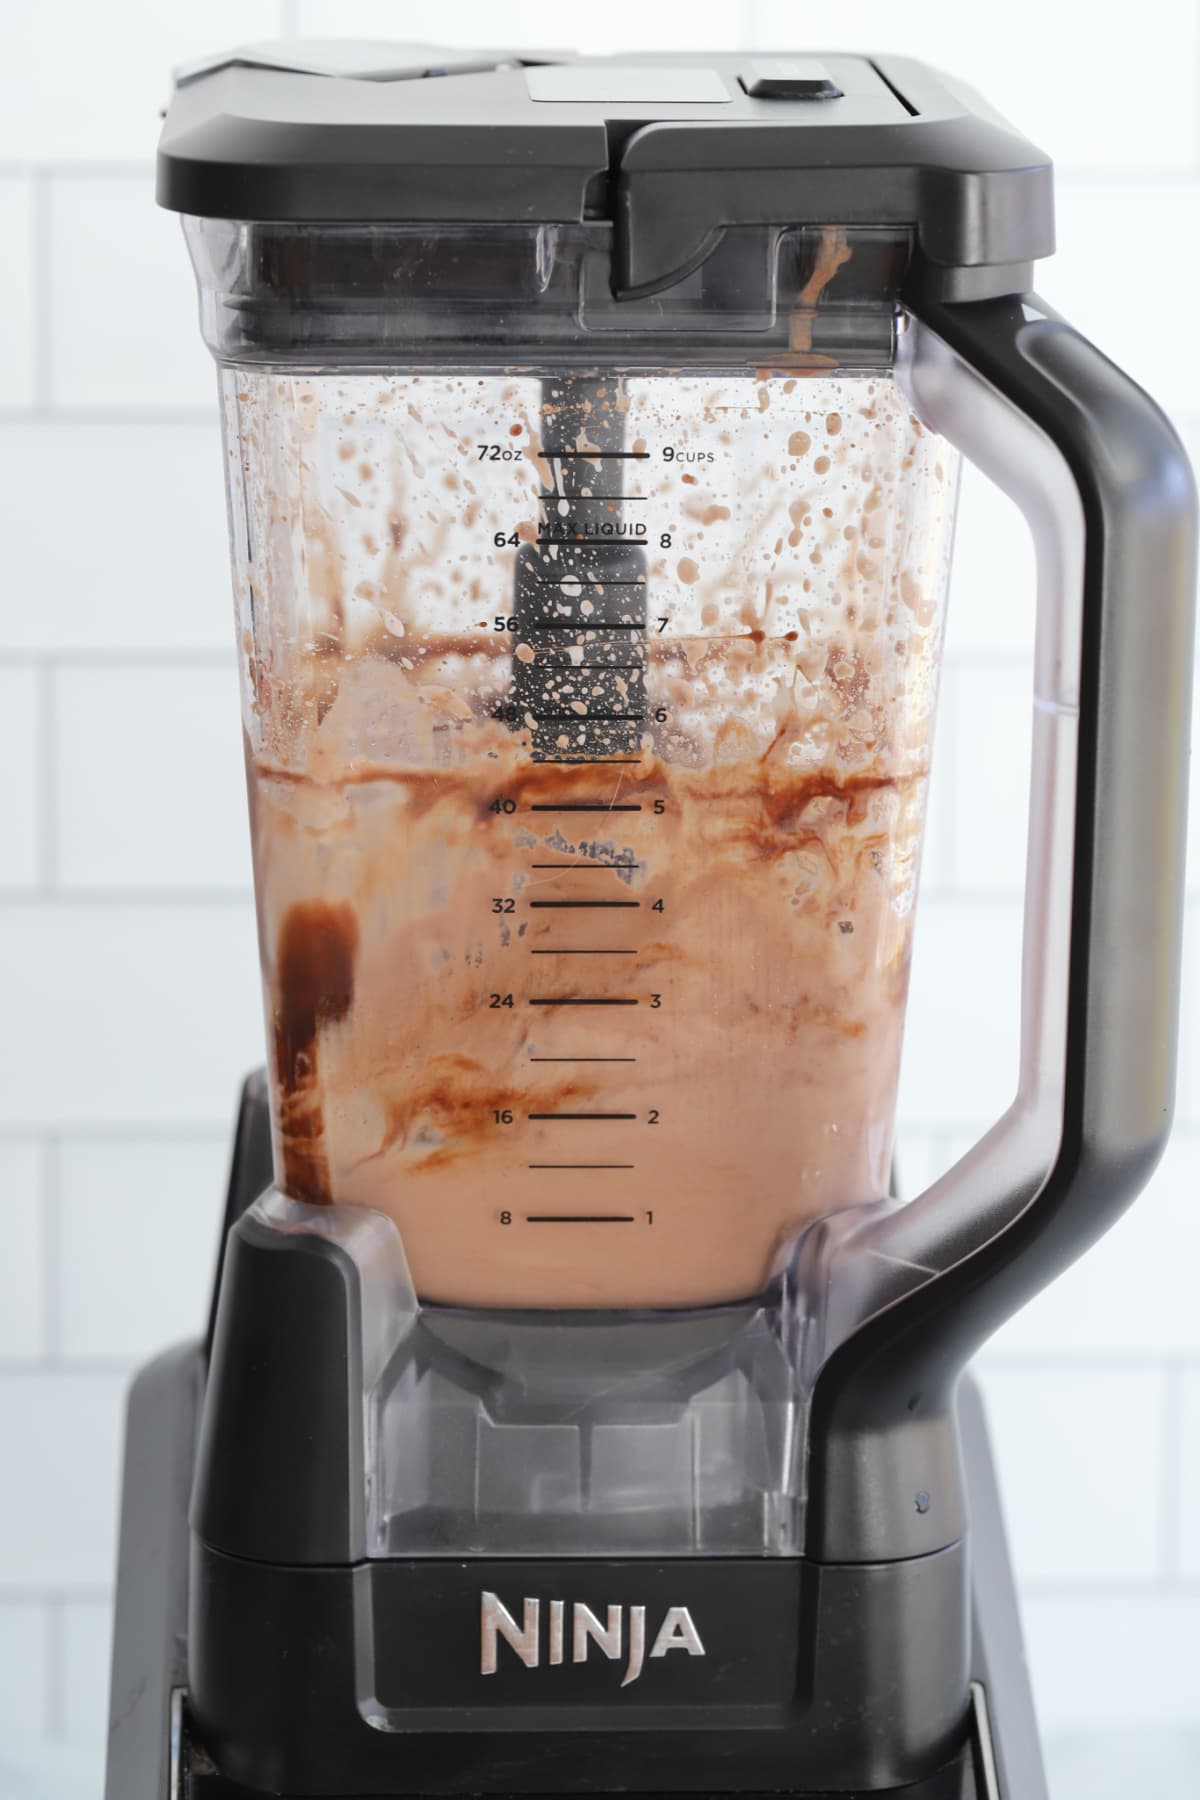 Combining chocolate milkshake ingredients in a blender